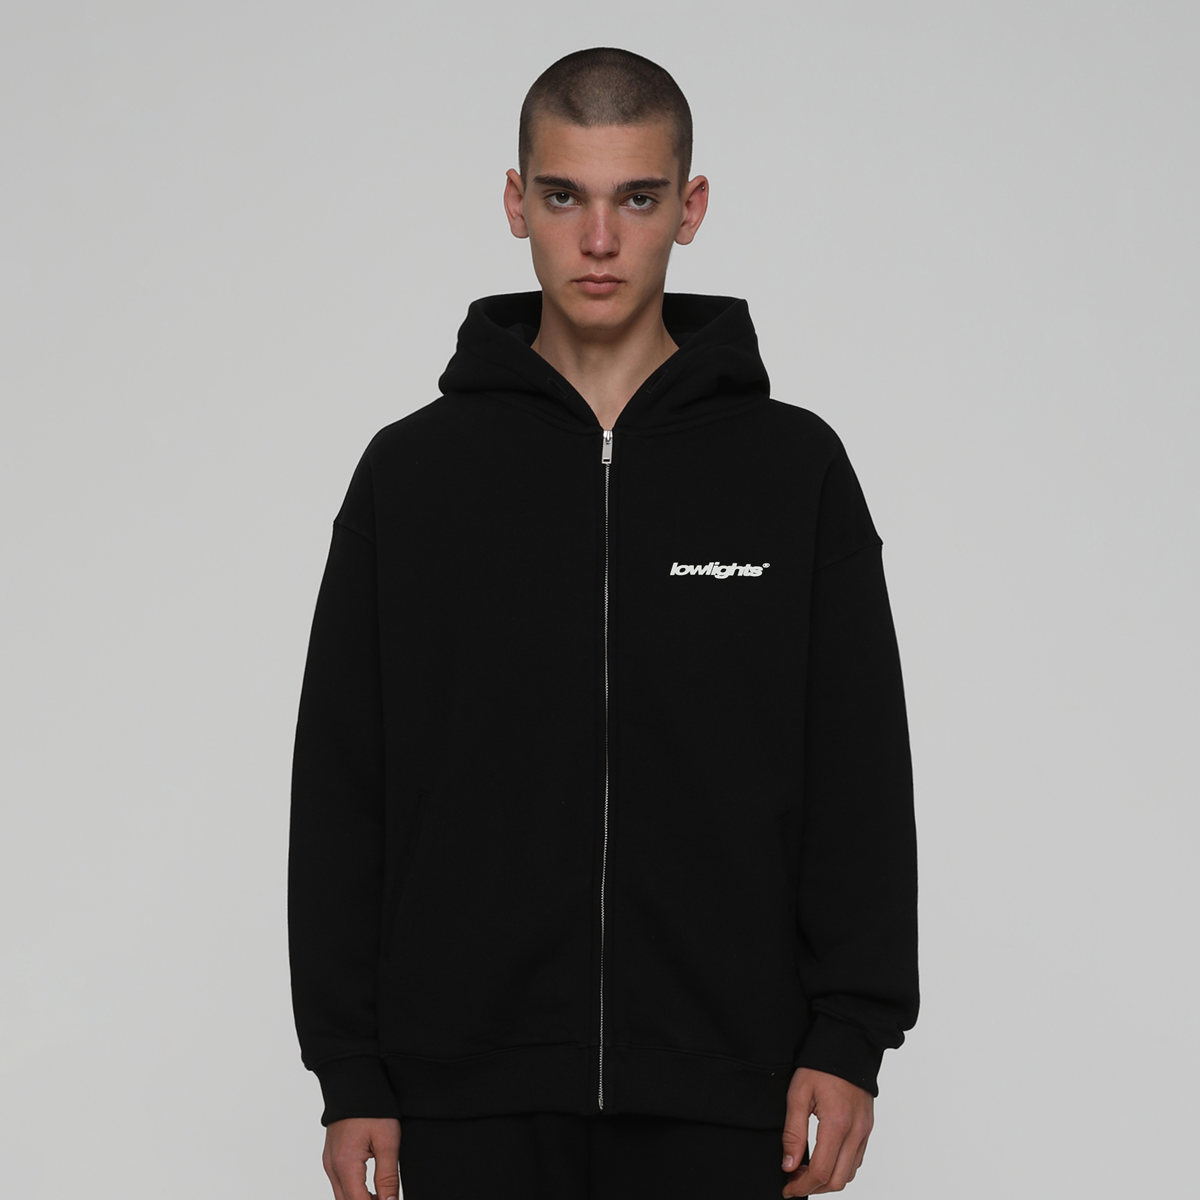 Low Lights Studios Light Zip-hoodie Hooded vesten Heren black maat: XL beschikbare maaten:S M L XL